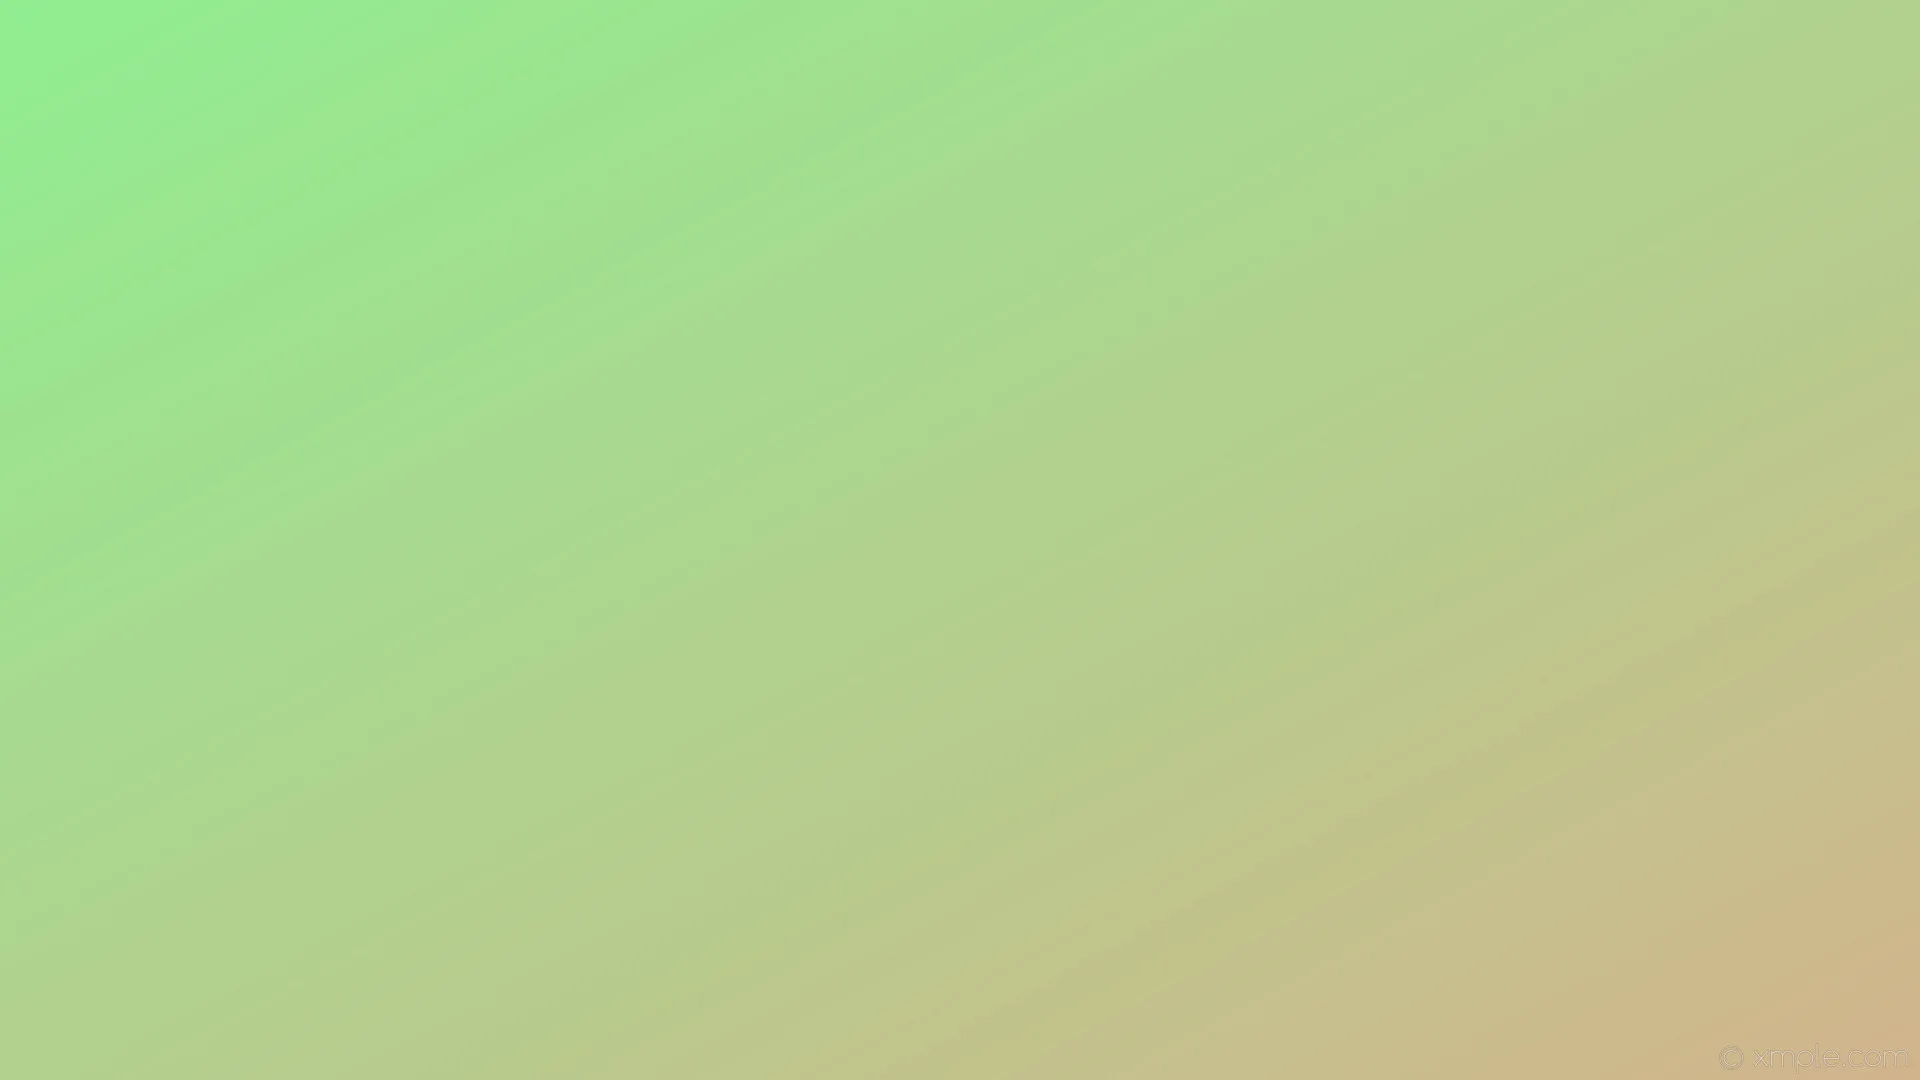 Wallpaper linear green brown gradient light green tan ee90 #d2b48c 150